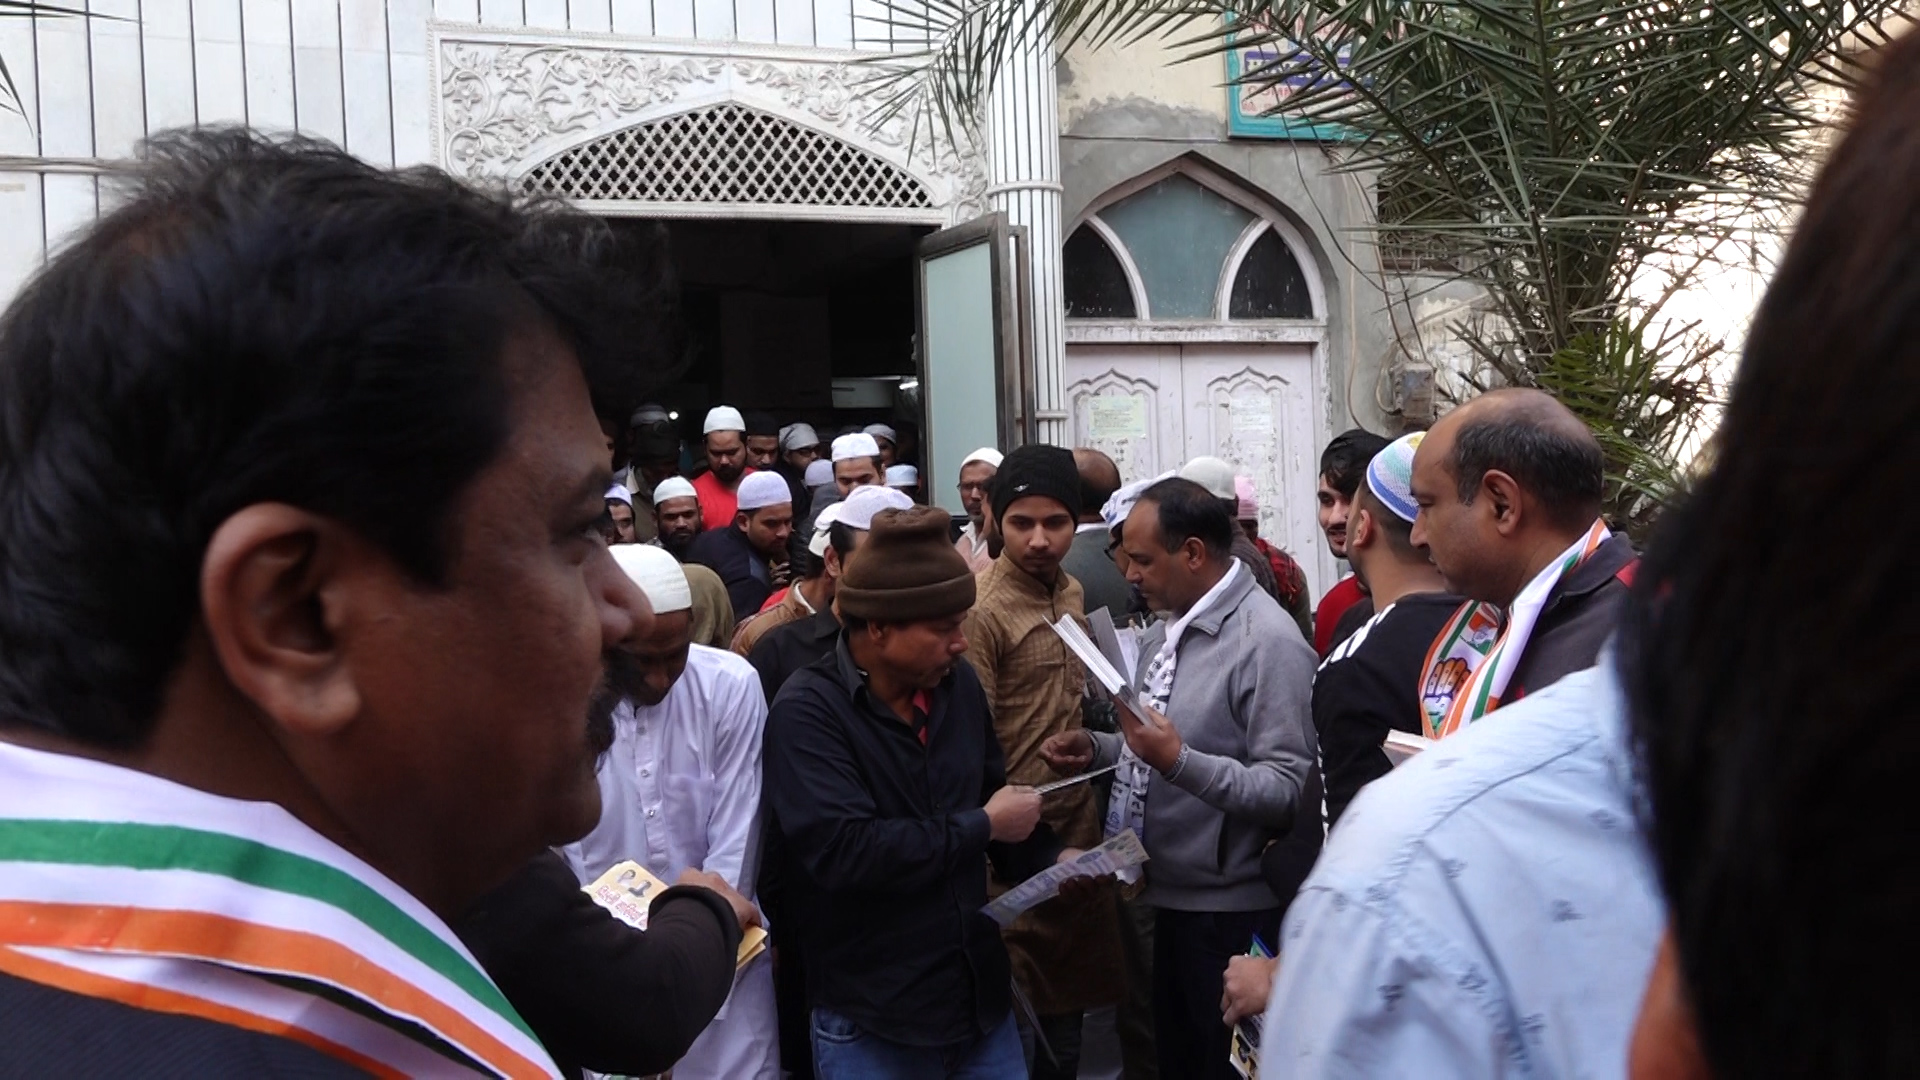 मंडावली के एक मस्जिद में आप और कांग्रेस कार्यकर्ता पर्चा बांटते हुए (फोटो: द वायर स्टाफ)